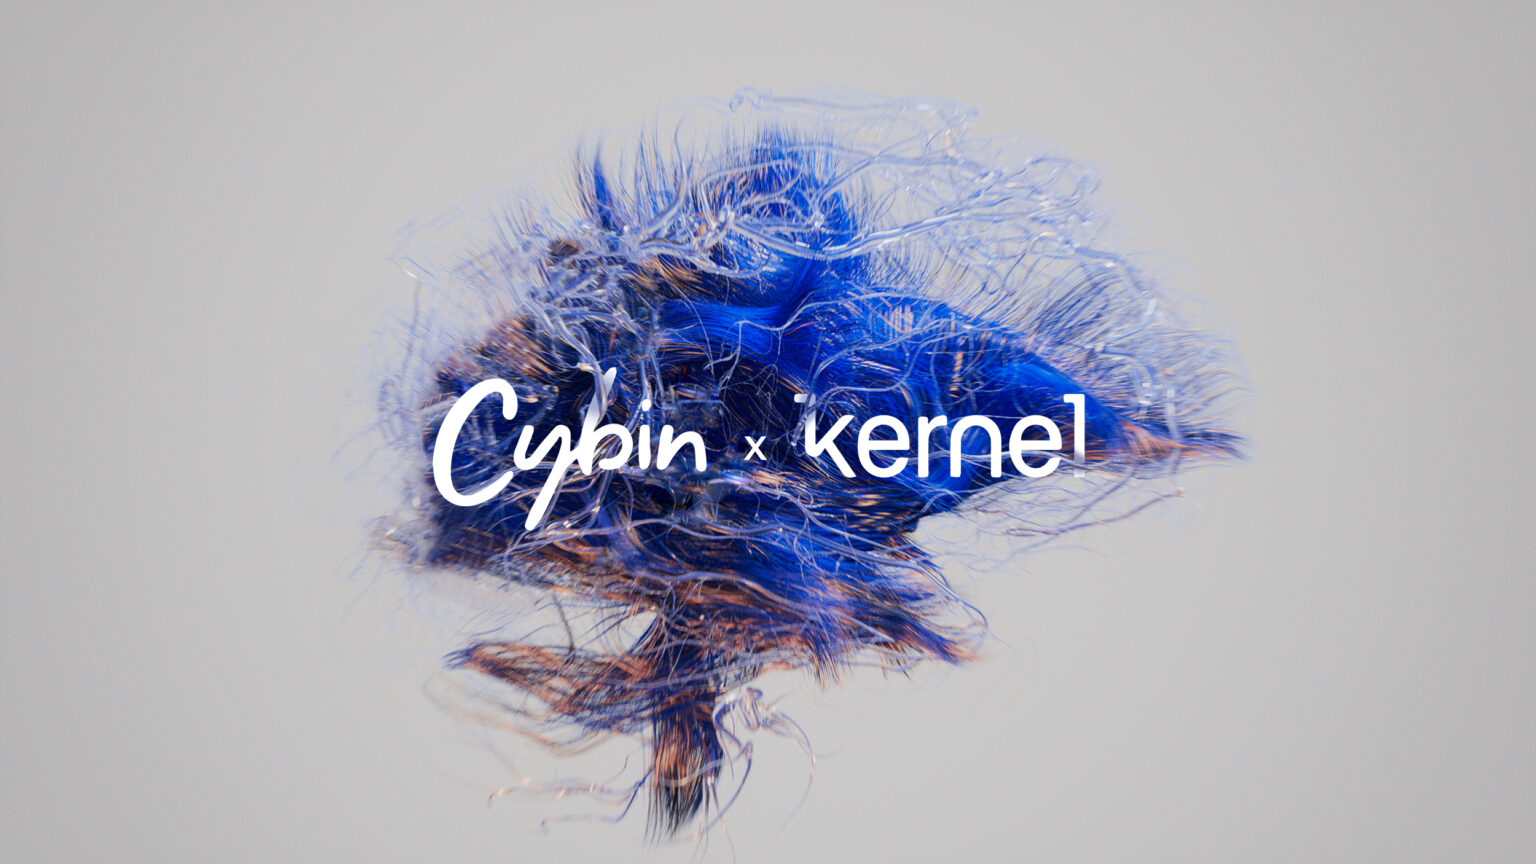 Cybin/Kernel Logo